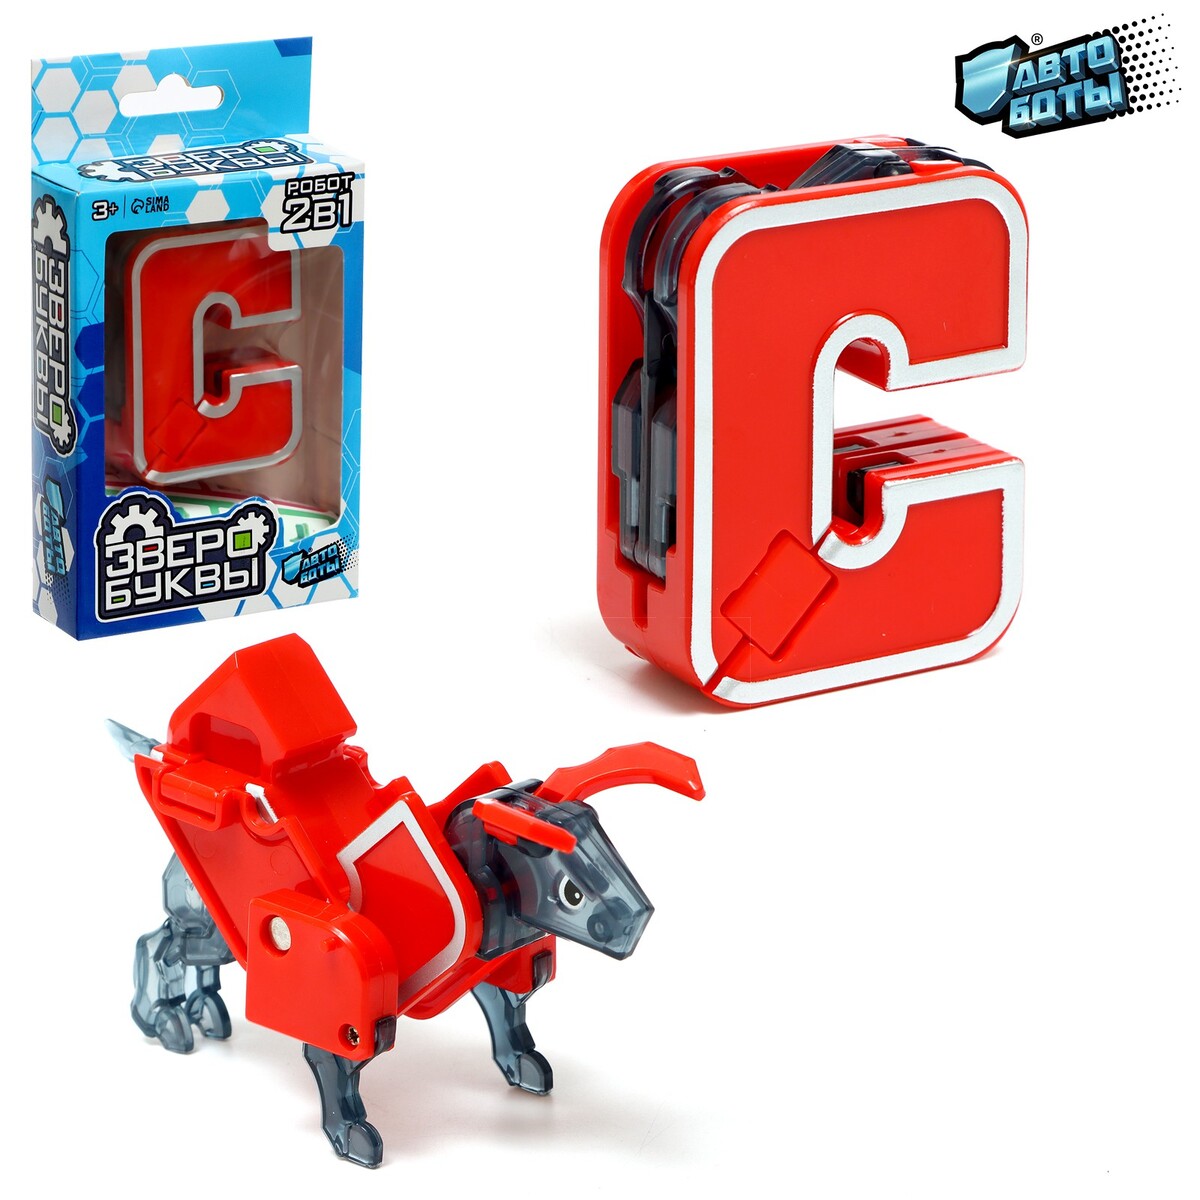 Робот-буква c, трансформируется в быка алая буква